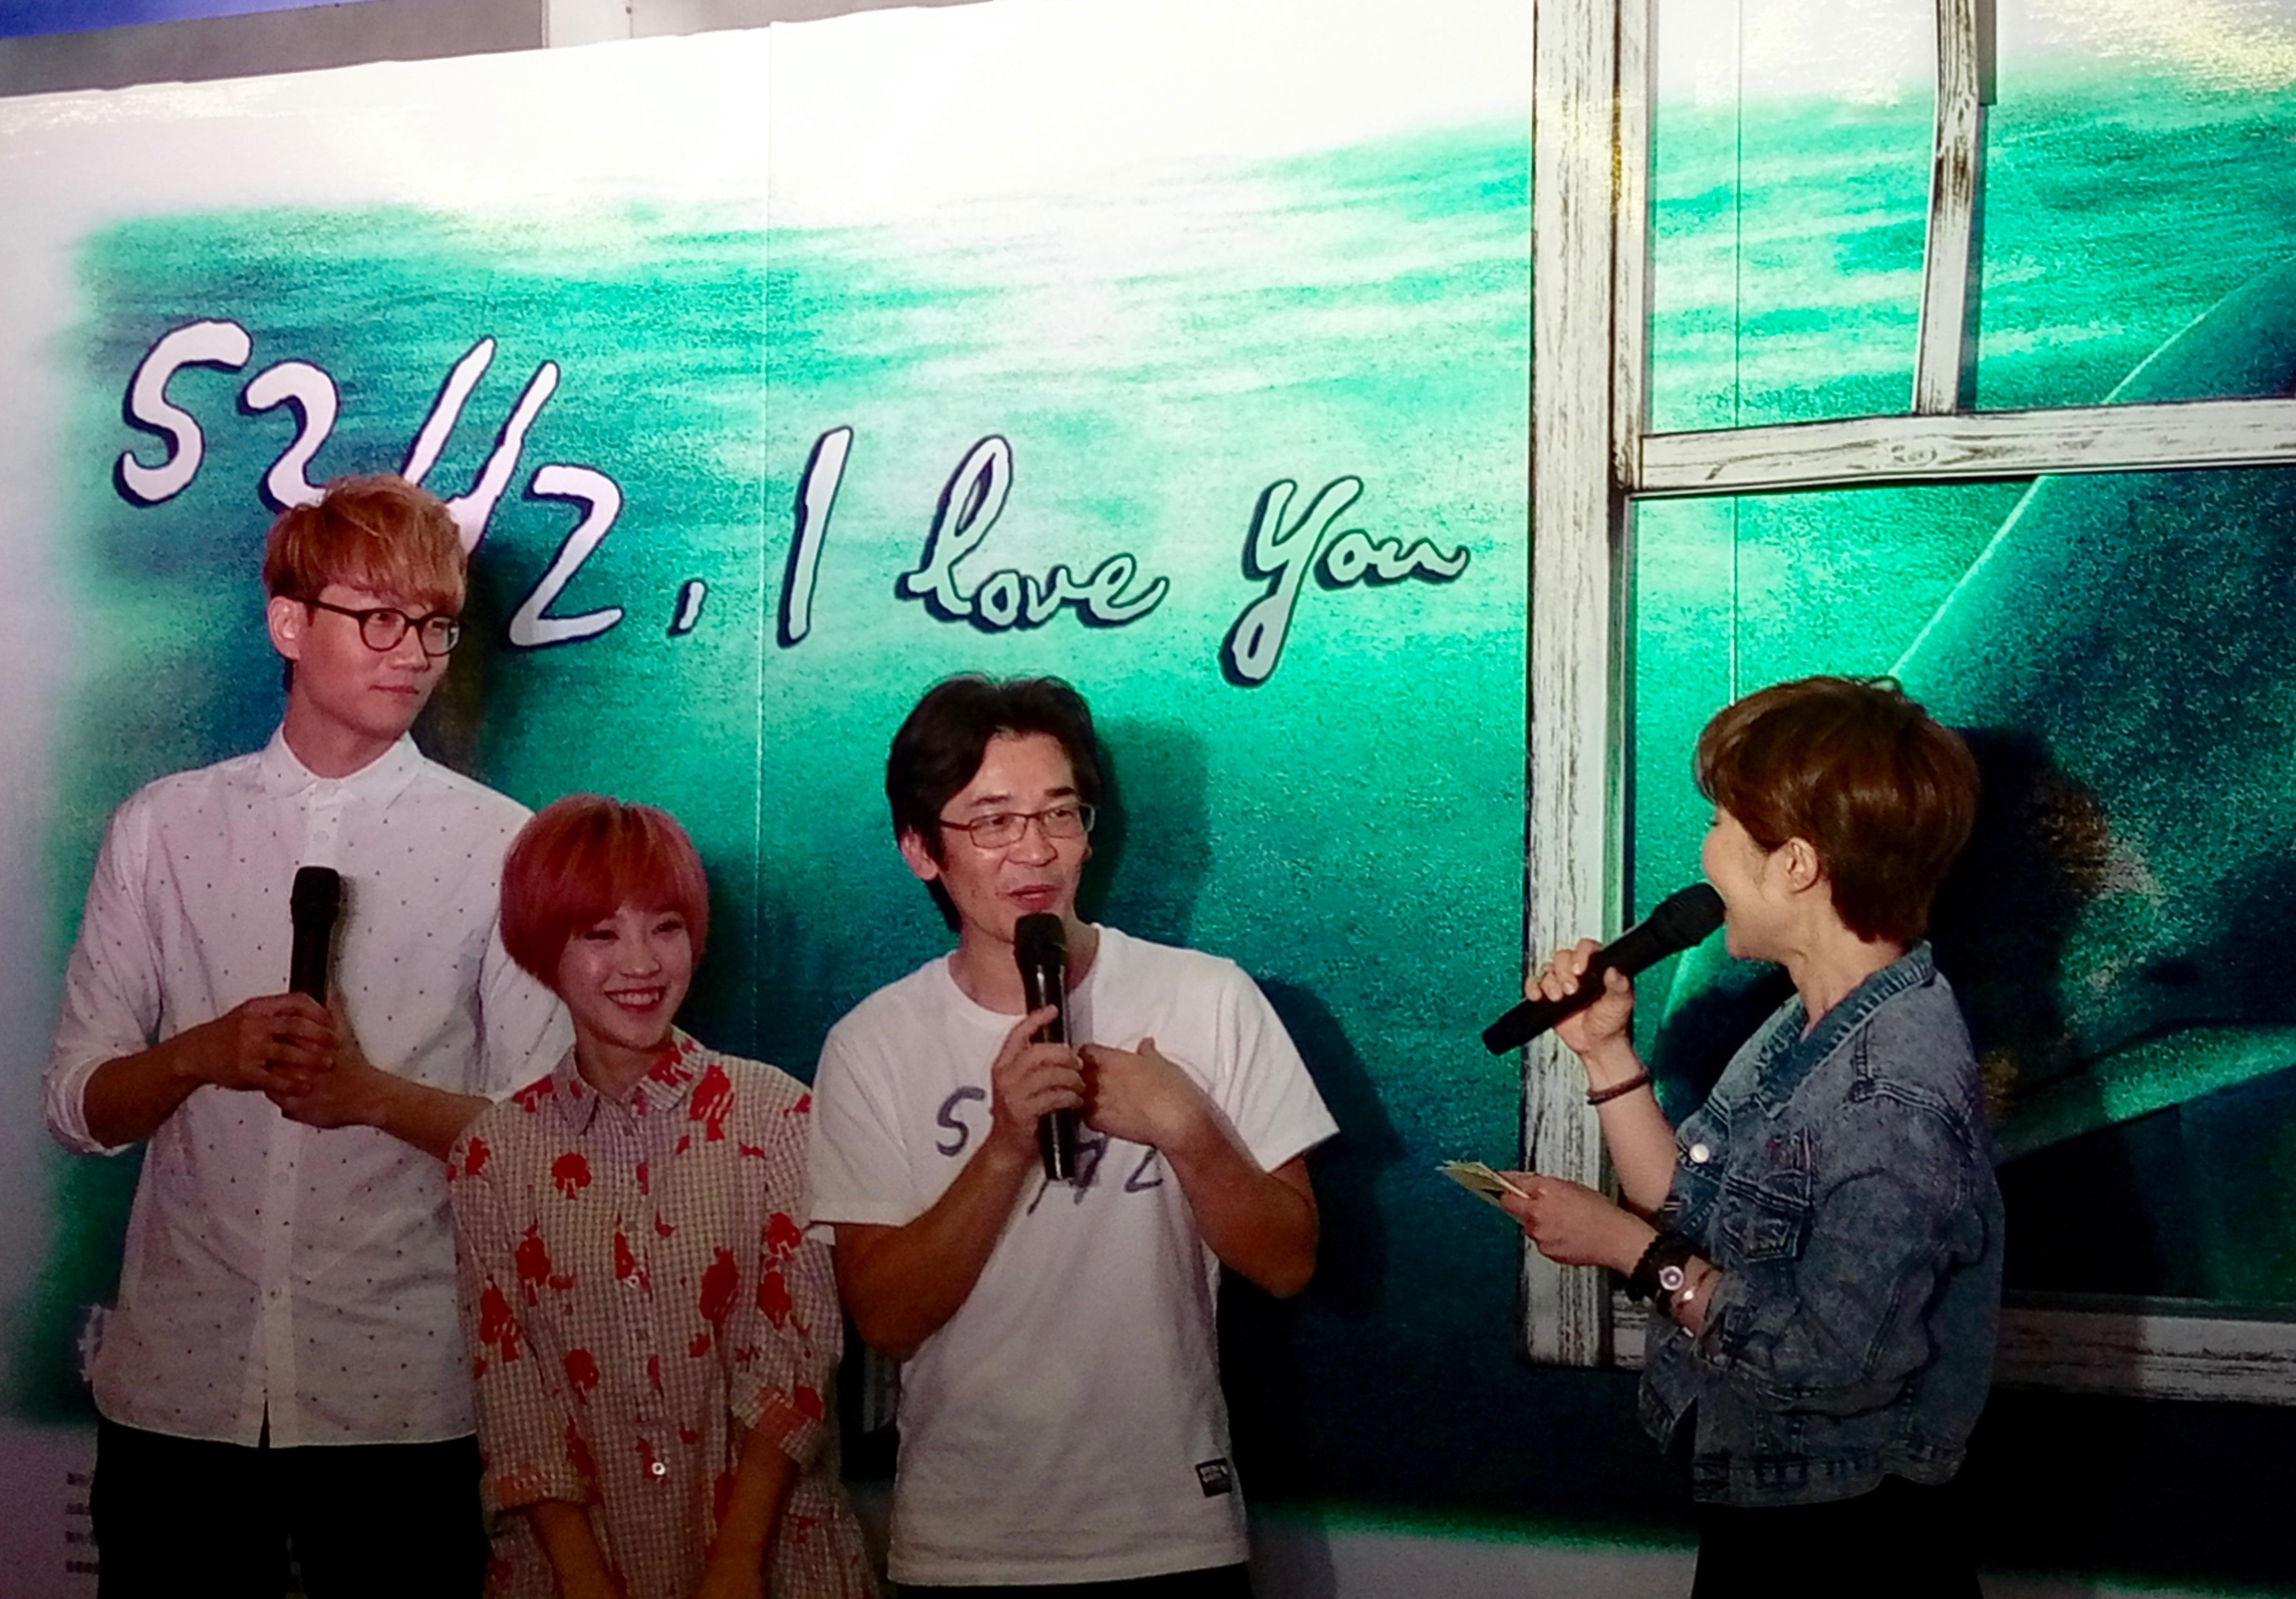 (8 Feb, 2017) Pengarah filem terkenal dari Taiwan, Wei Te-sheng (ke-2 dari kanan) datang ke Malaysia untuk mempromosikan filem terkininya “52Hz, I Love You” bersama dengan watak utama yang juga merupakan penyanyi pop Lin Zhong-yu (ke-1 dari kiri) dan Zhuang Juan-ying (ke-2 dari kiri) dan dapat sambutan yang meriah.